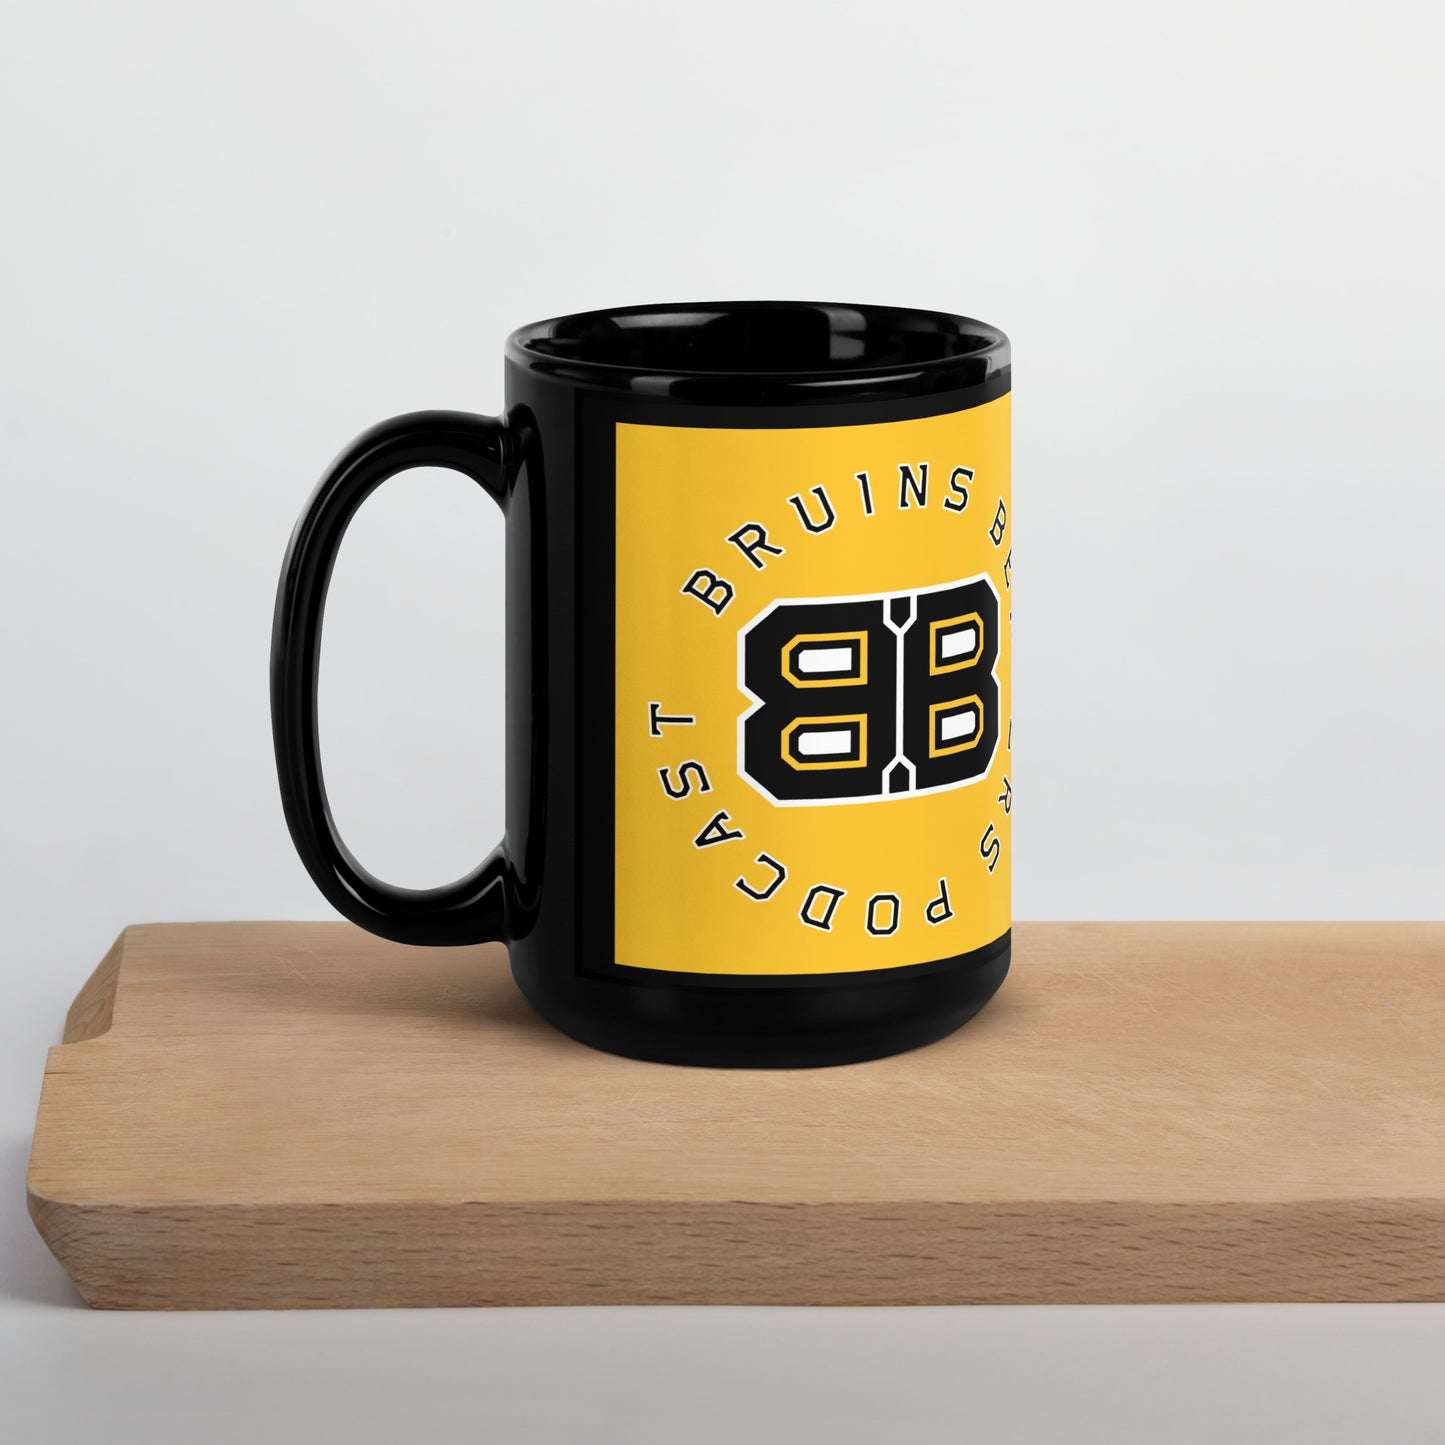 Bruins Benders Black Mug